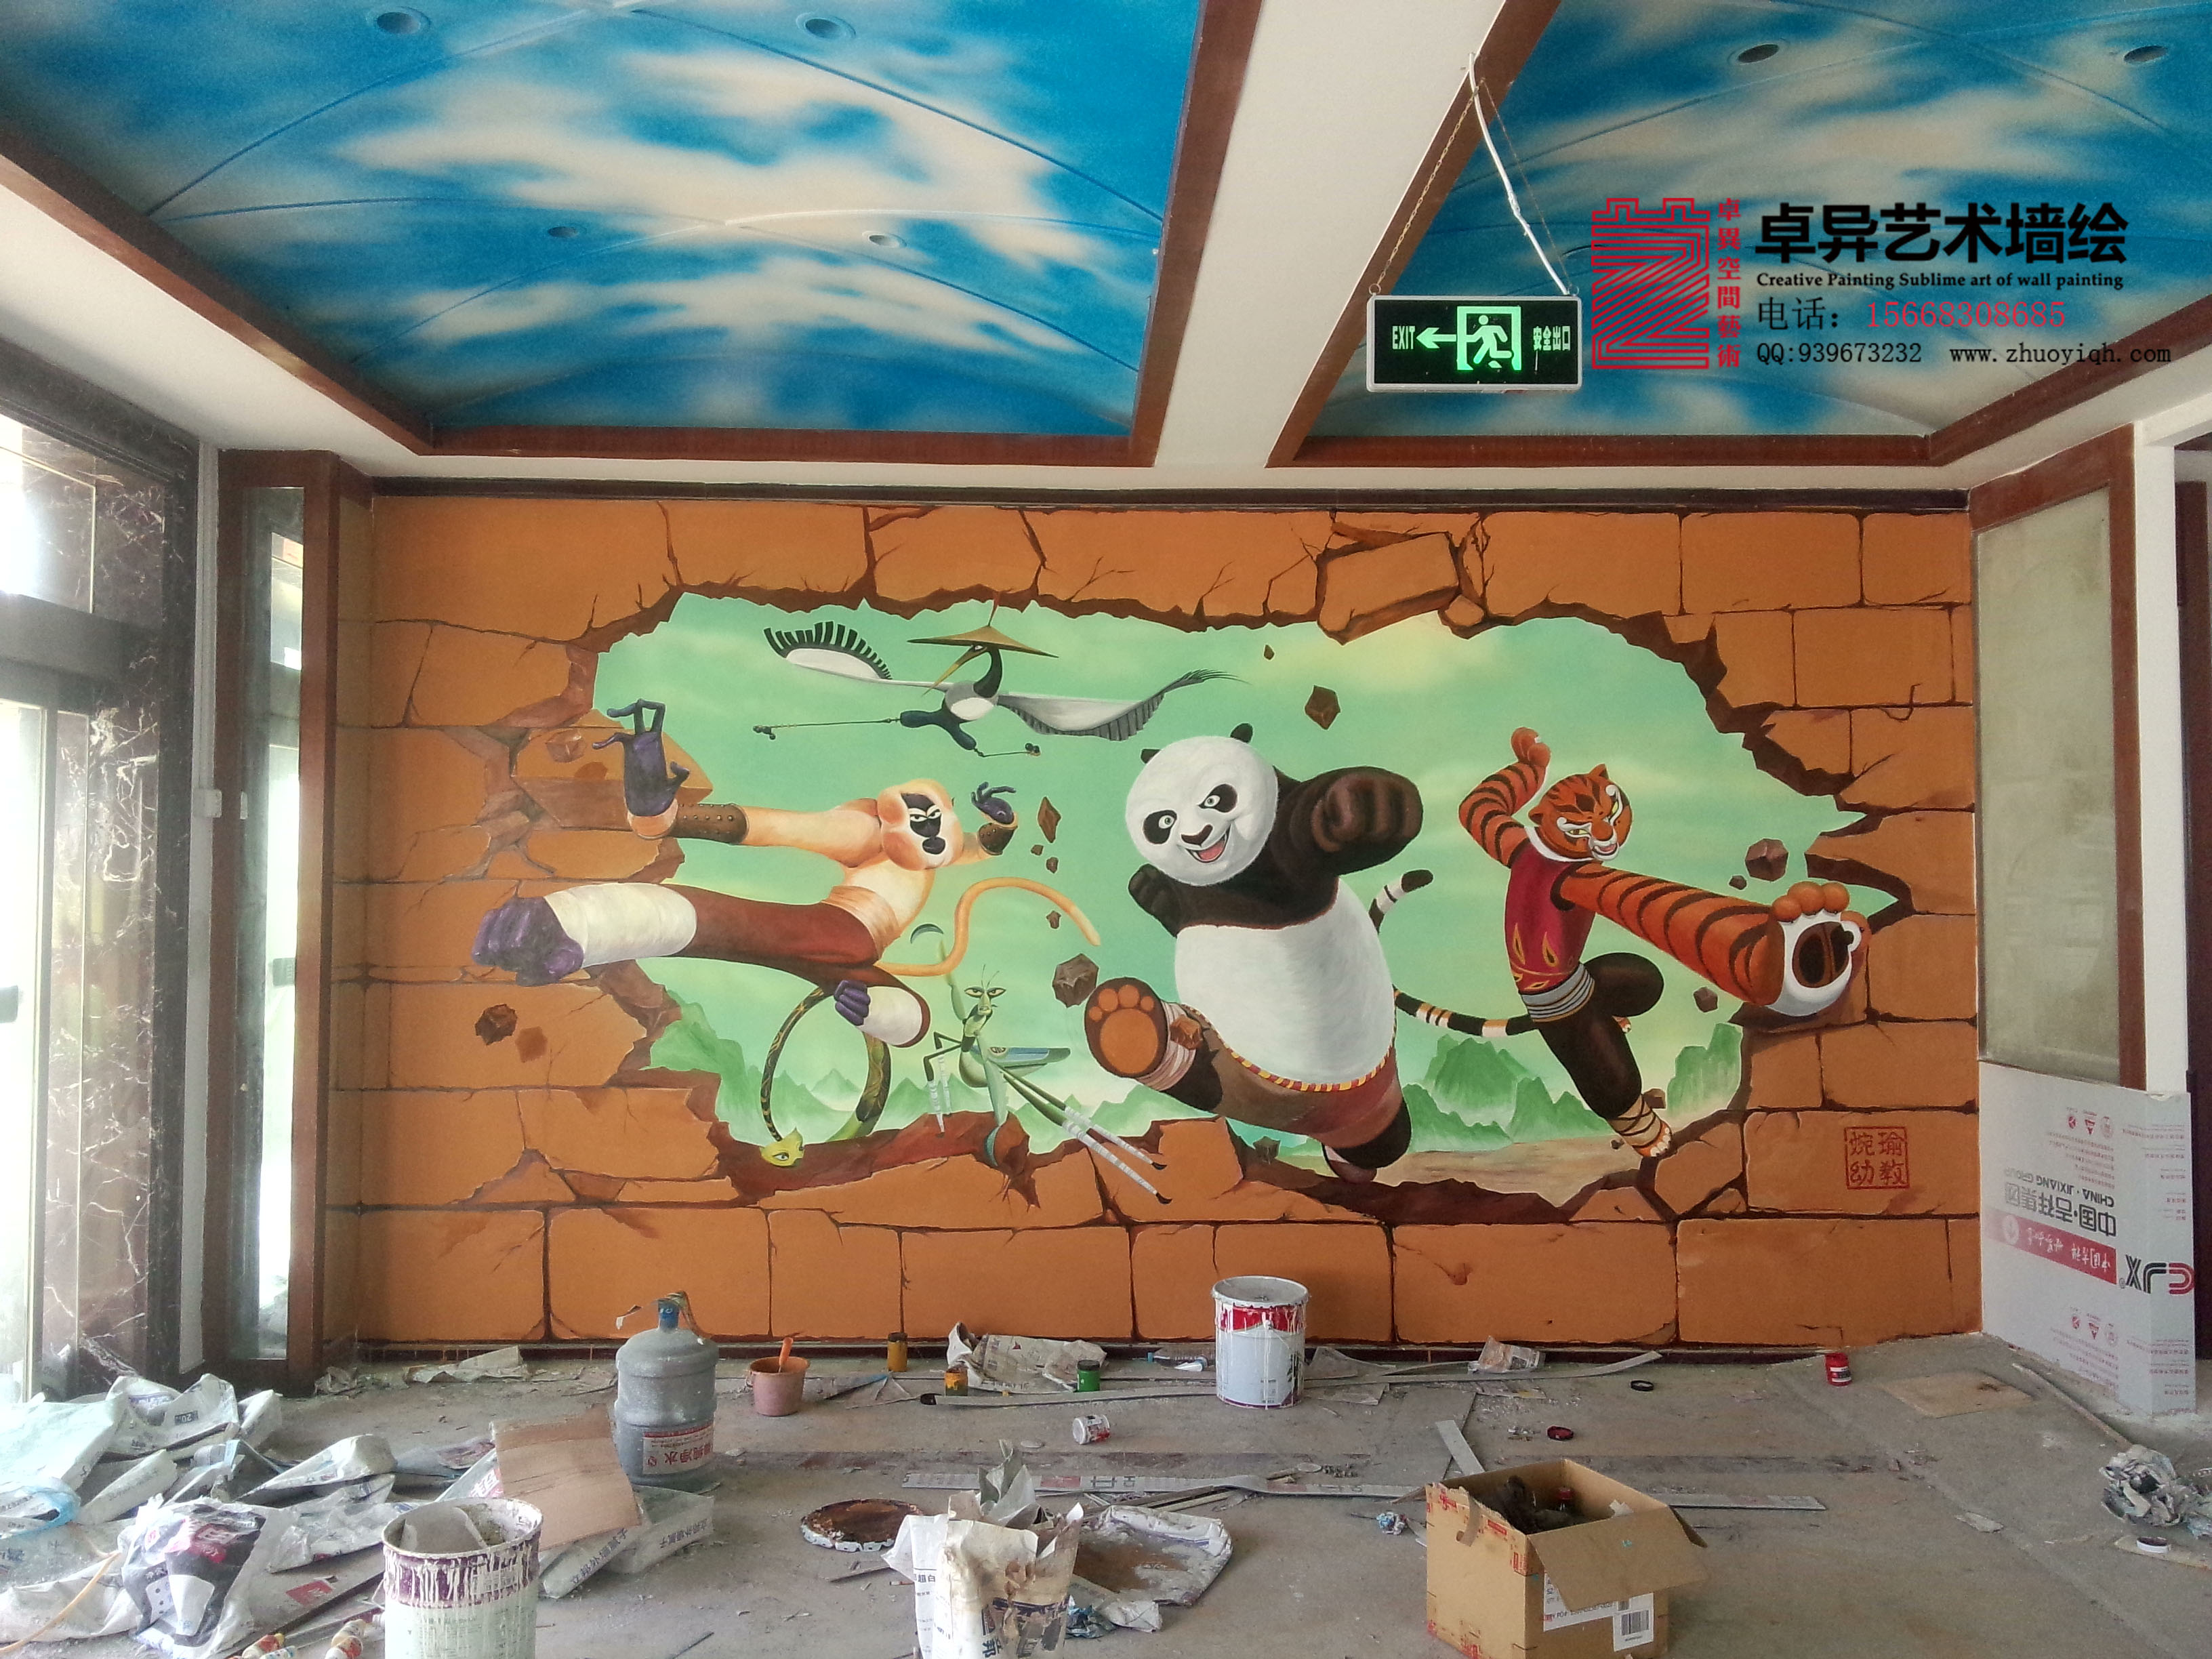 现在很多幼儿园都在制作幼儿园手绘墙壁画 相信孩子们会很喜欢吧 幼儿